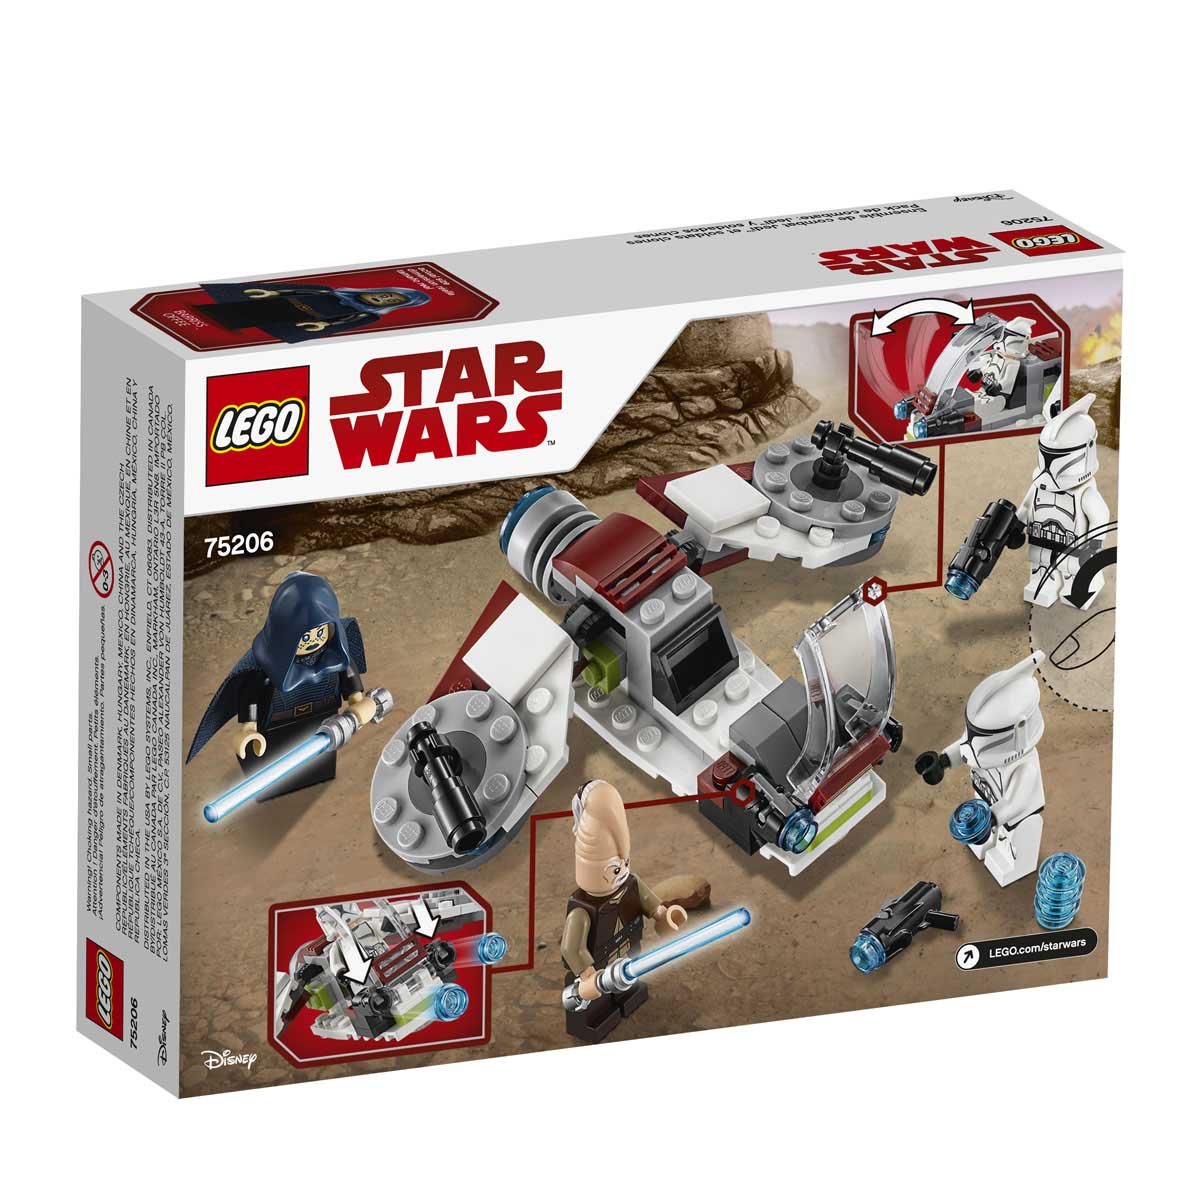 Star Wars Pack de Combate Jedi y Soldados Clones Lego